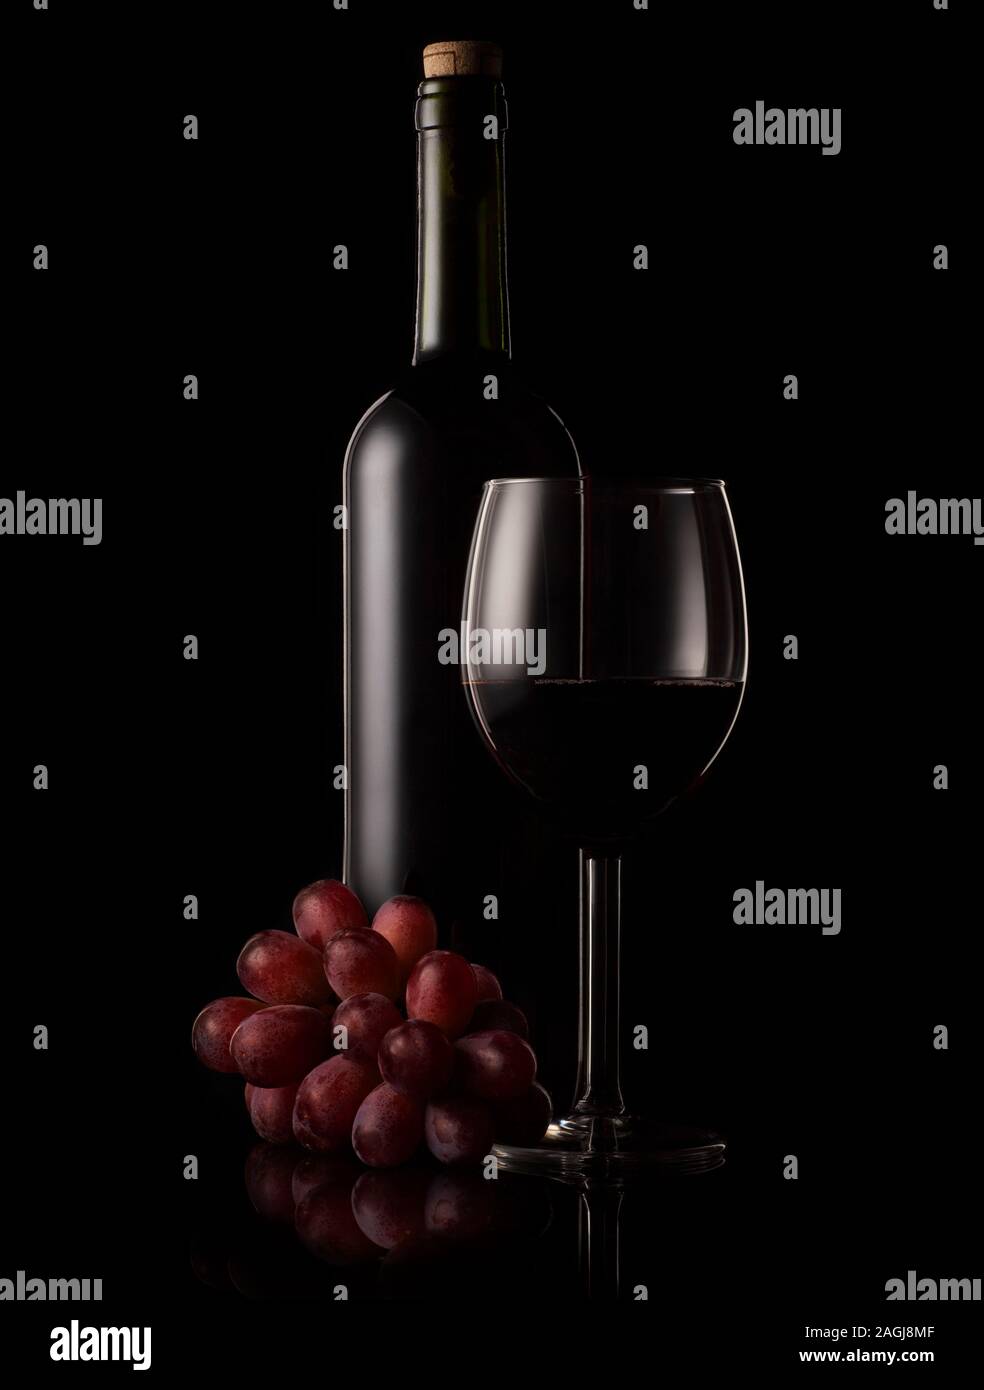 Botella de vino rojo y cristal con fondo negro e iluminación de RIM. Foto de stock